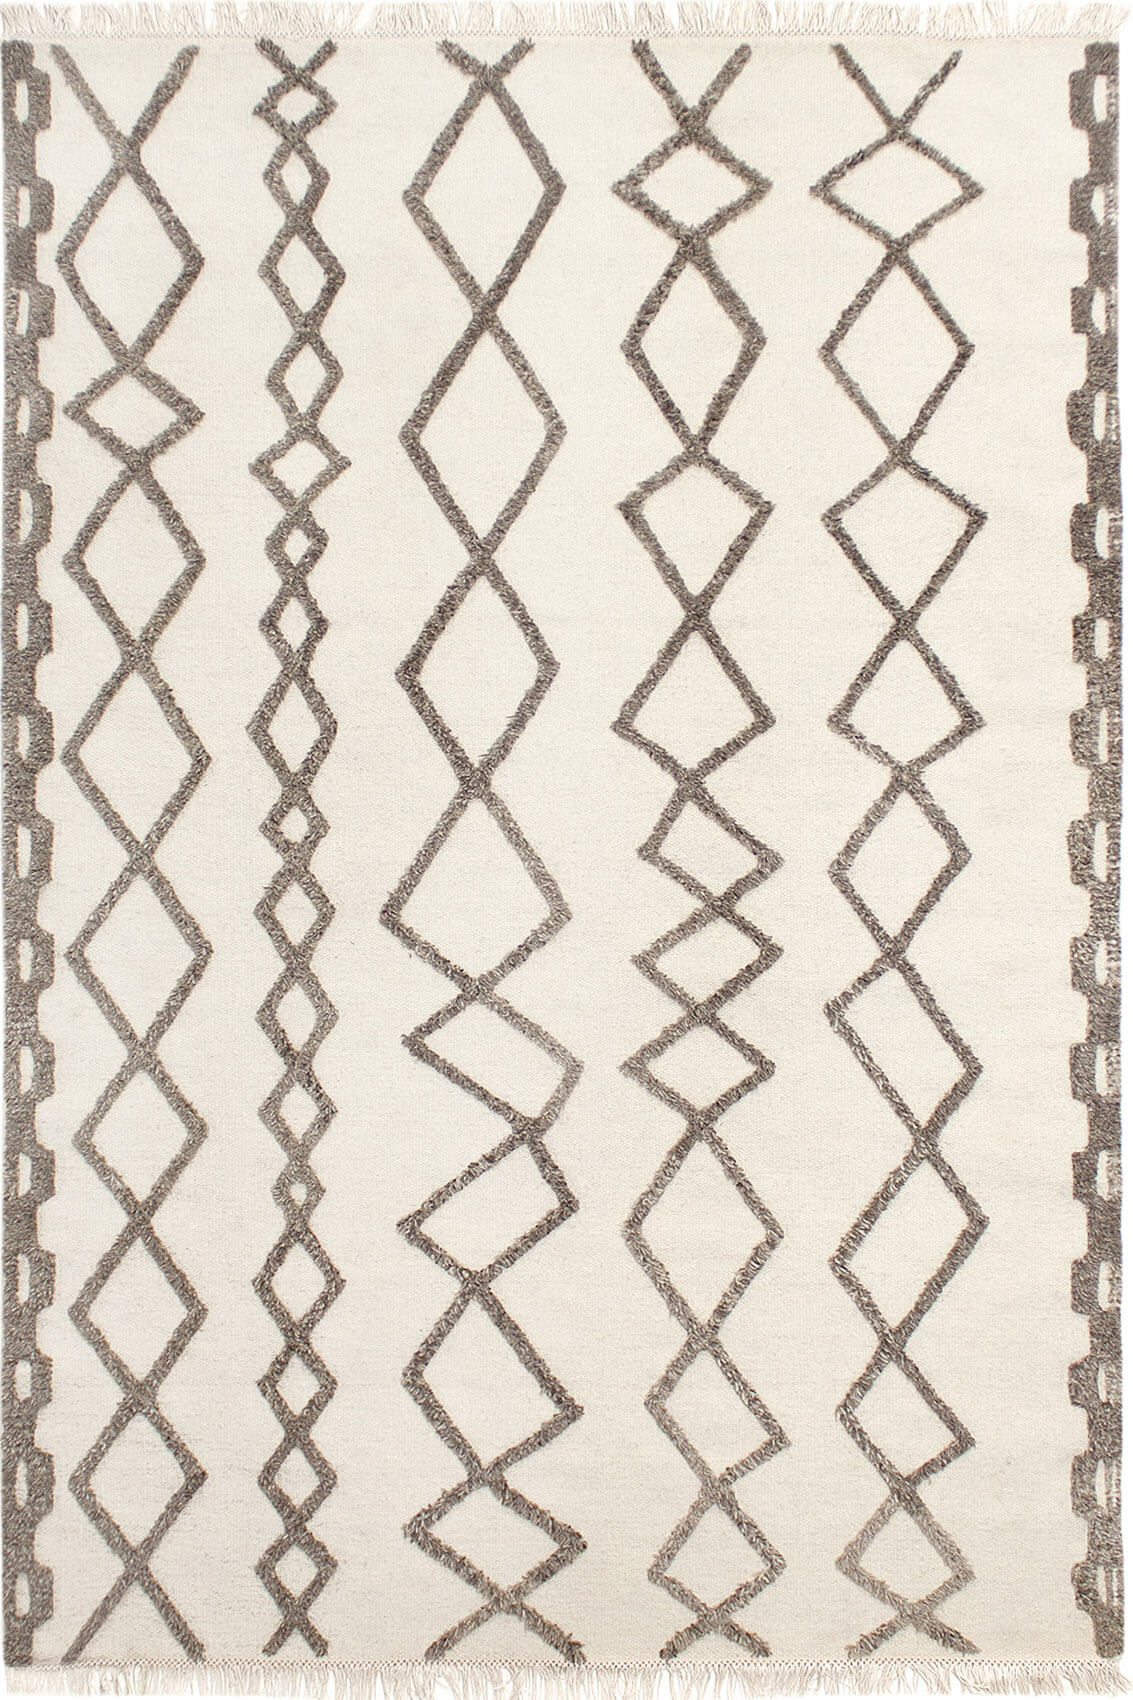 Crafty Rug by Serge Lesage ☞ Size: 160 x 230 cm